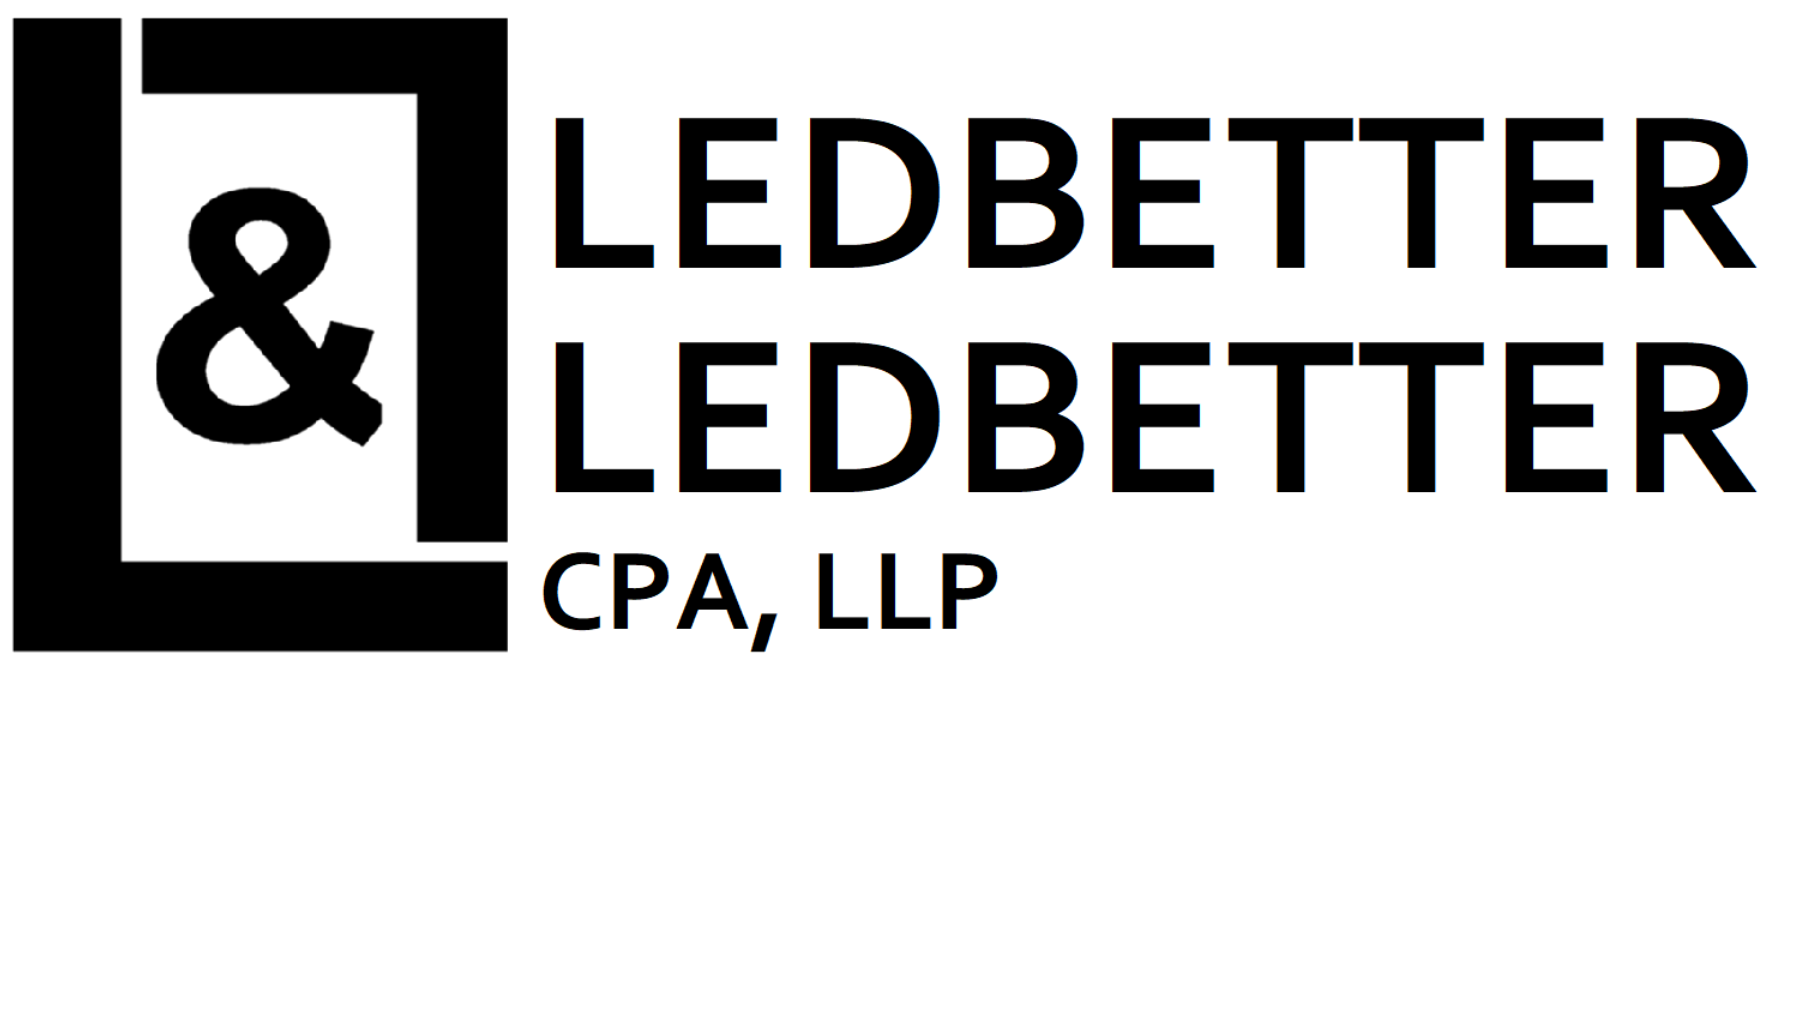 Ledbetter & Ledbetter CPA, LLP